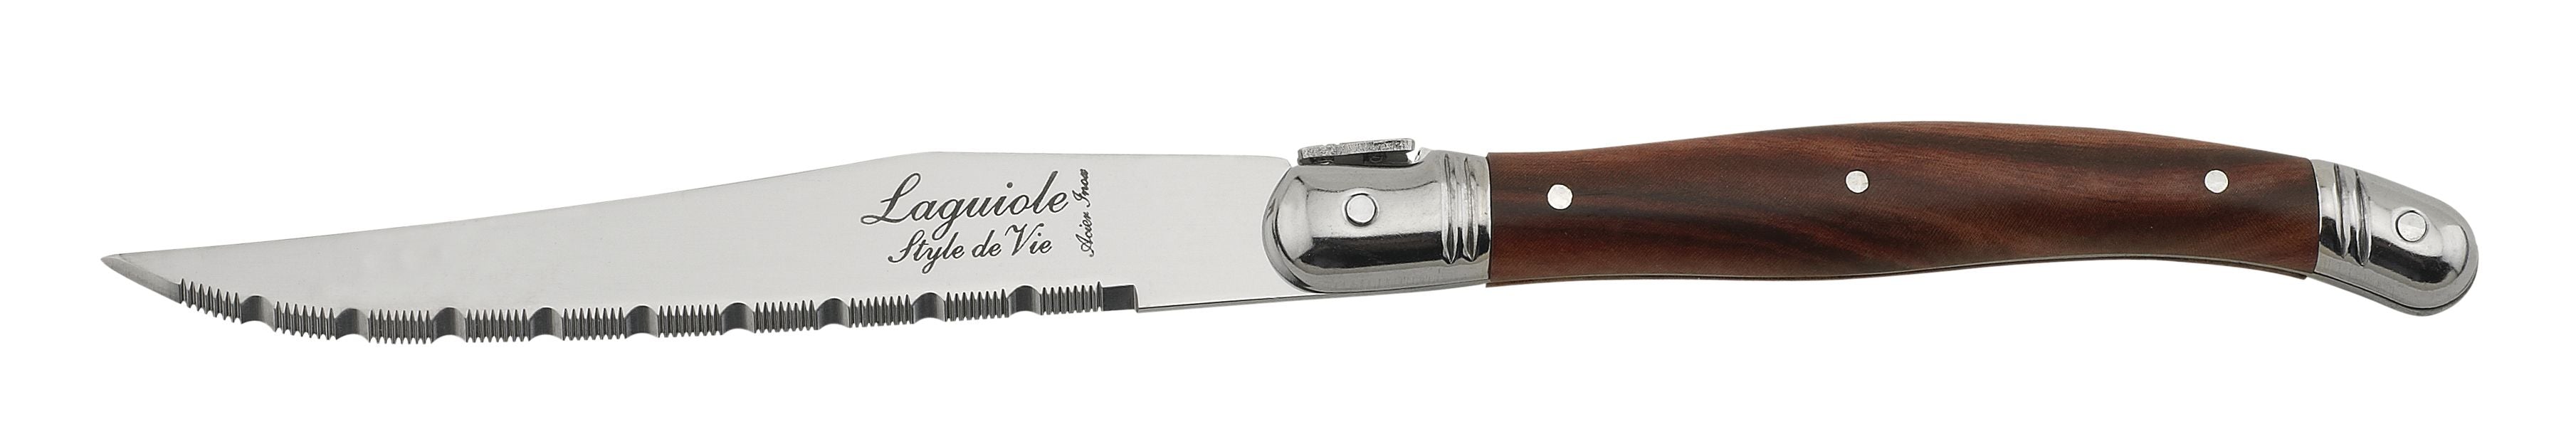 Style de Vie Authentique Laguiole Premium Line Steak Messer 6 Stück Set, dunkles Holz